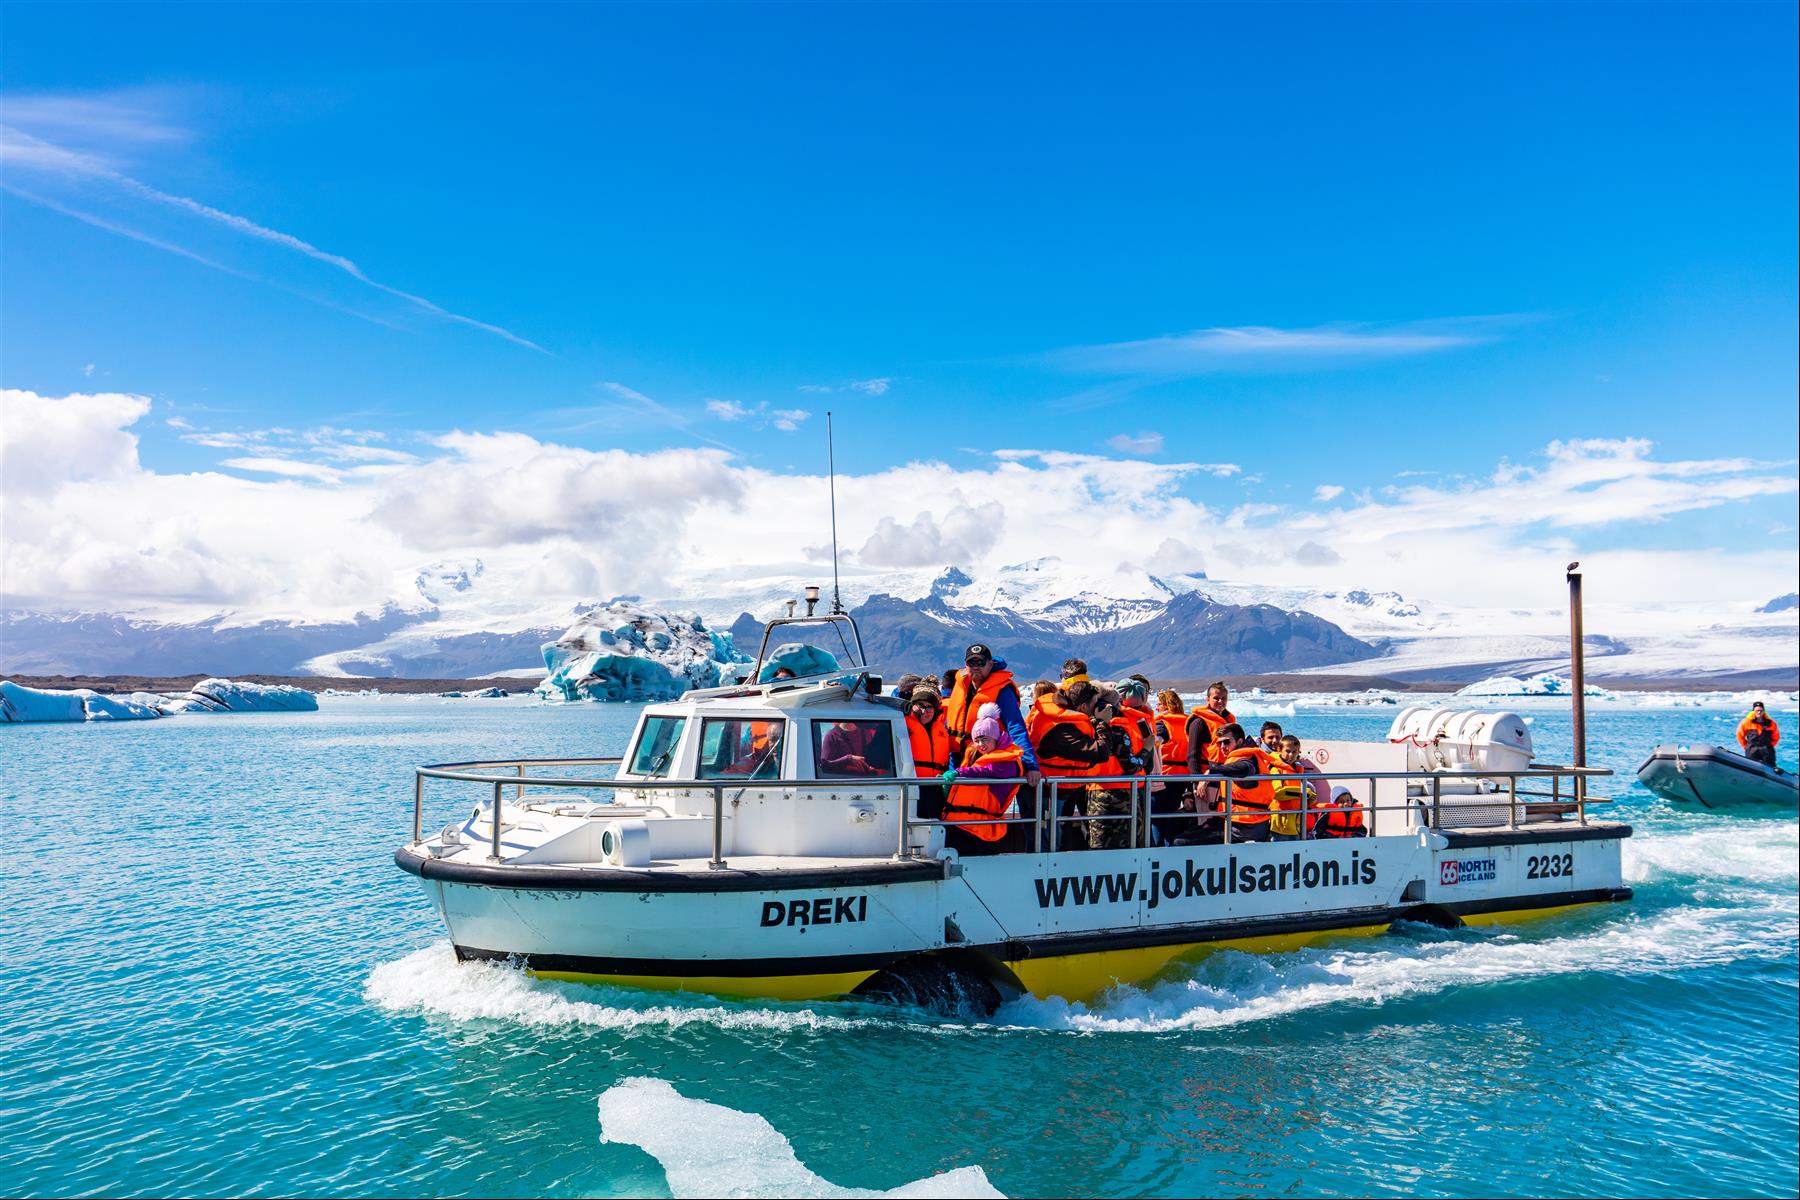 [攝影旅行團] 冰島白色歐羅拉11日之旅